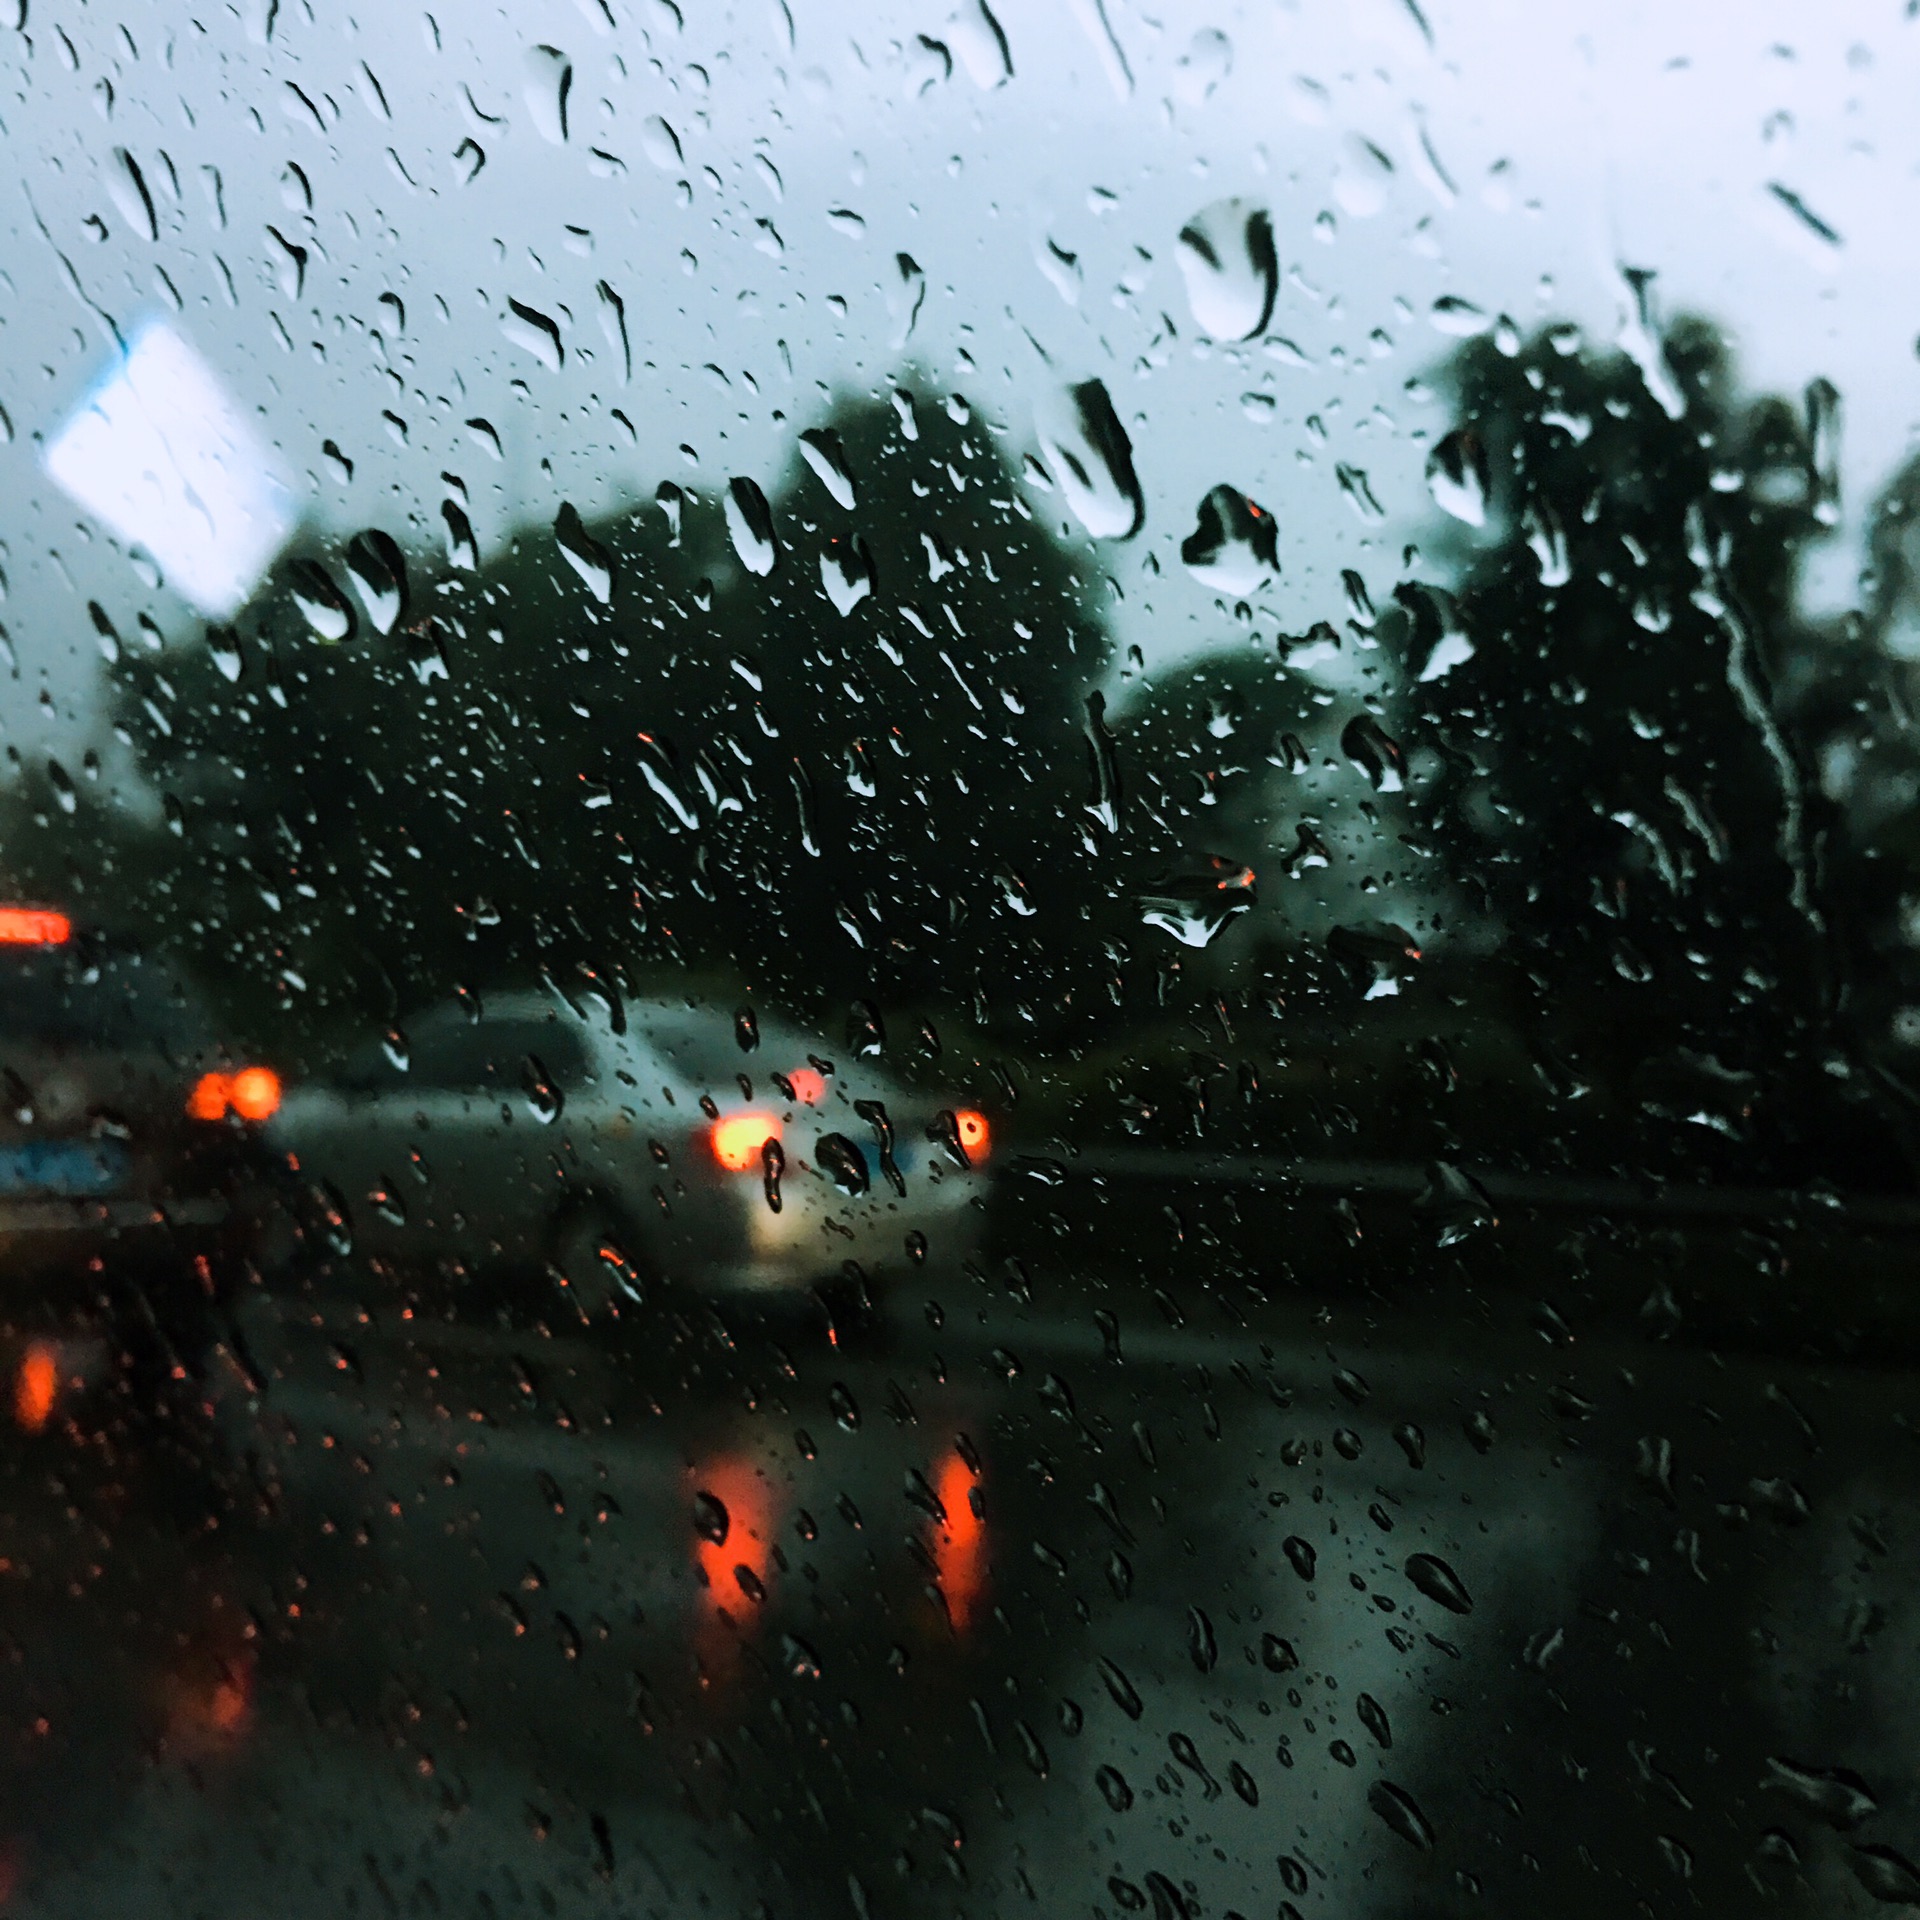 窗外的雨很大.车不多,但路滑,我们还是减慢速度.